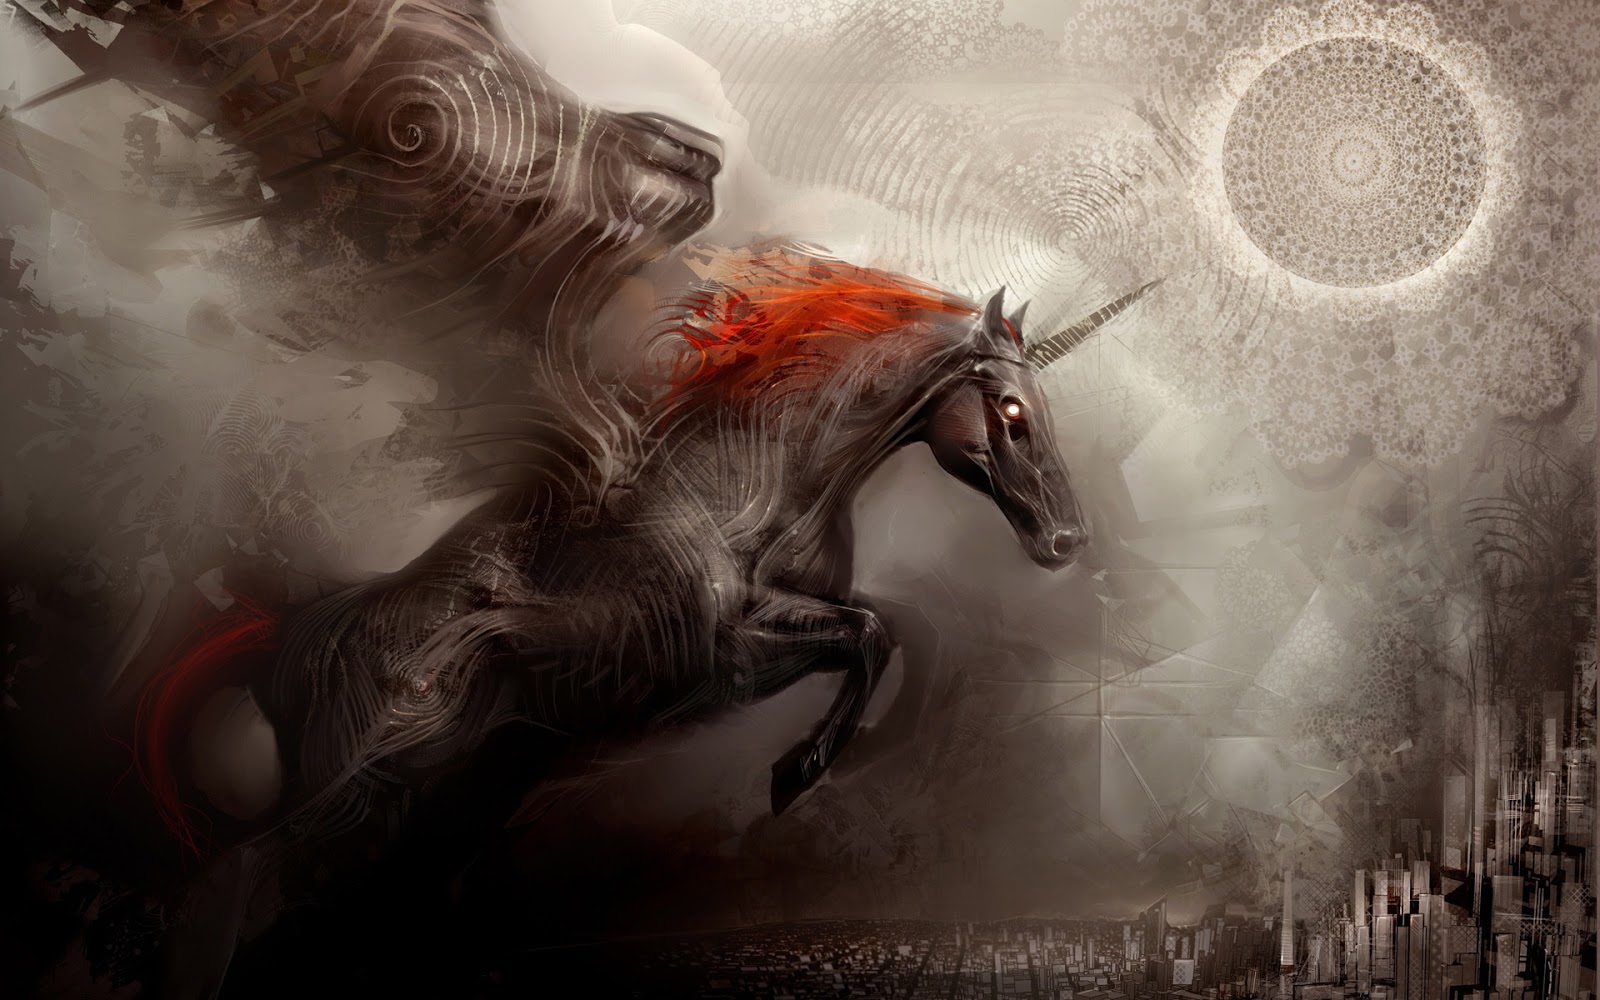 fondos de pantalla de unicornio hd,cg artwork,personaje de ficción,criatura mítica,mitología,ilustración